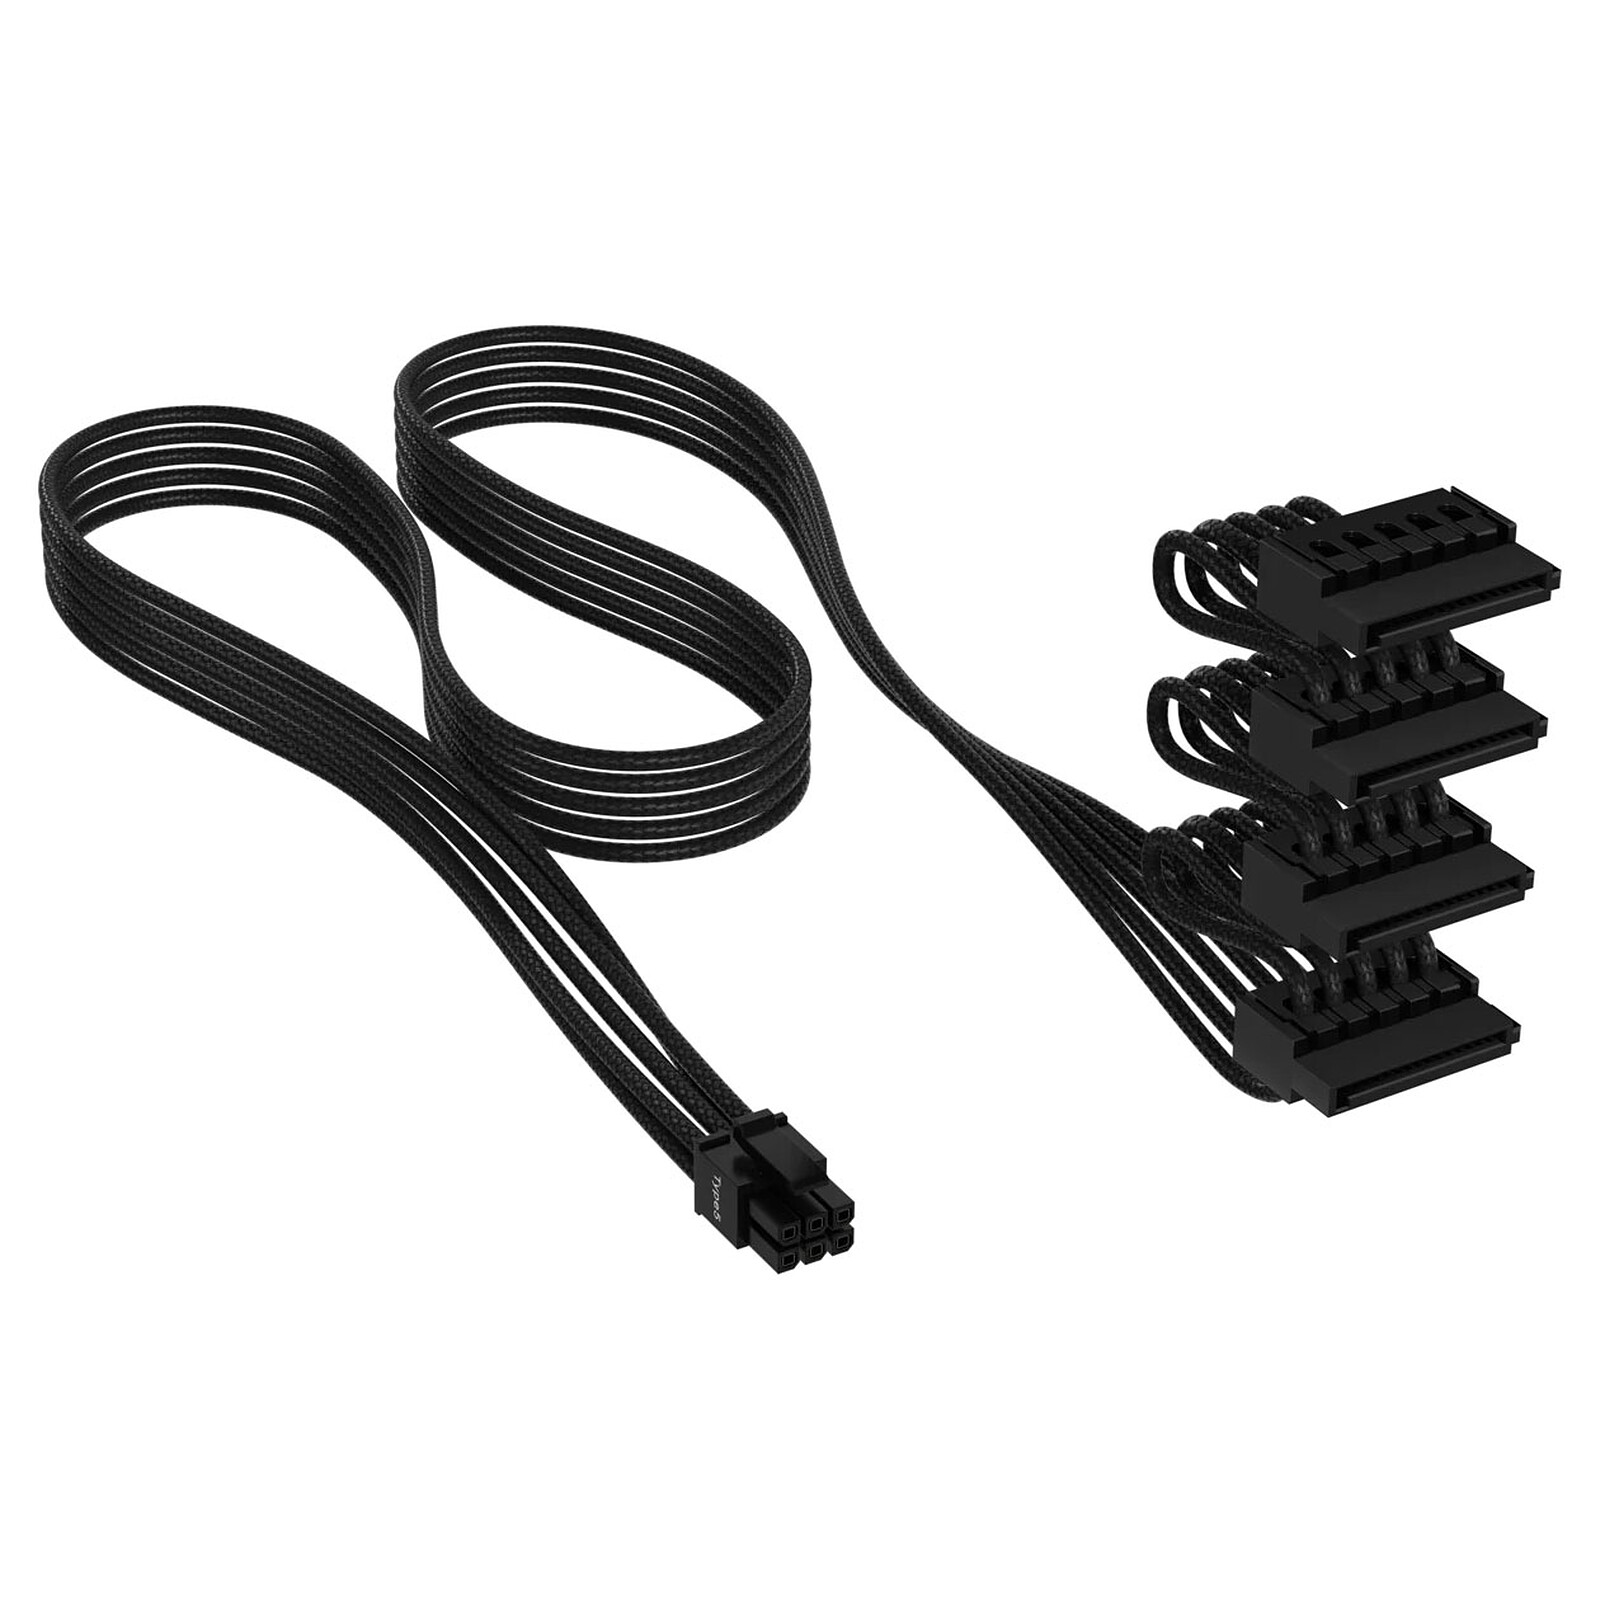 Corsair Premium Câble d'alimentation SATA 4 connecteurs type 5 Gen 5 - Noir  - Alimentation - Garantie 3 ans LDLC